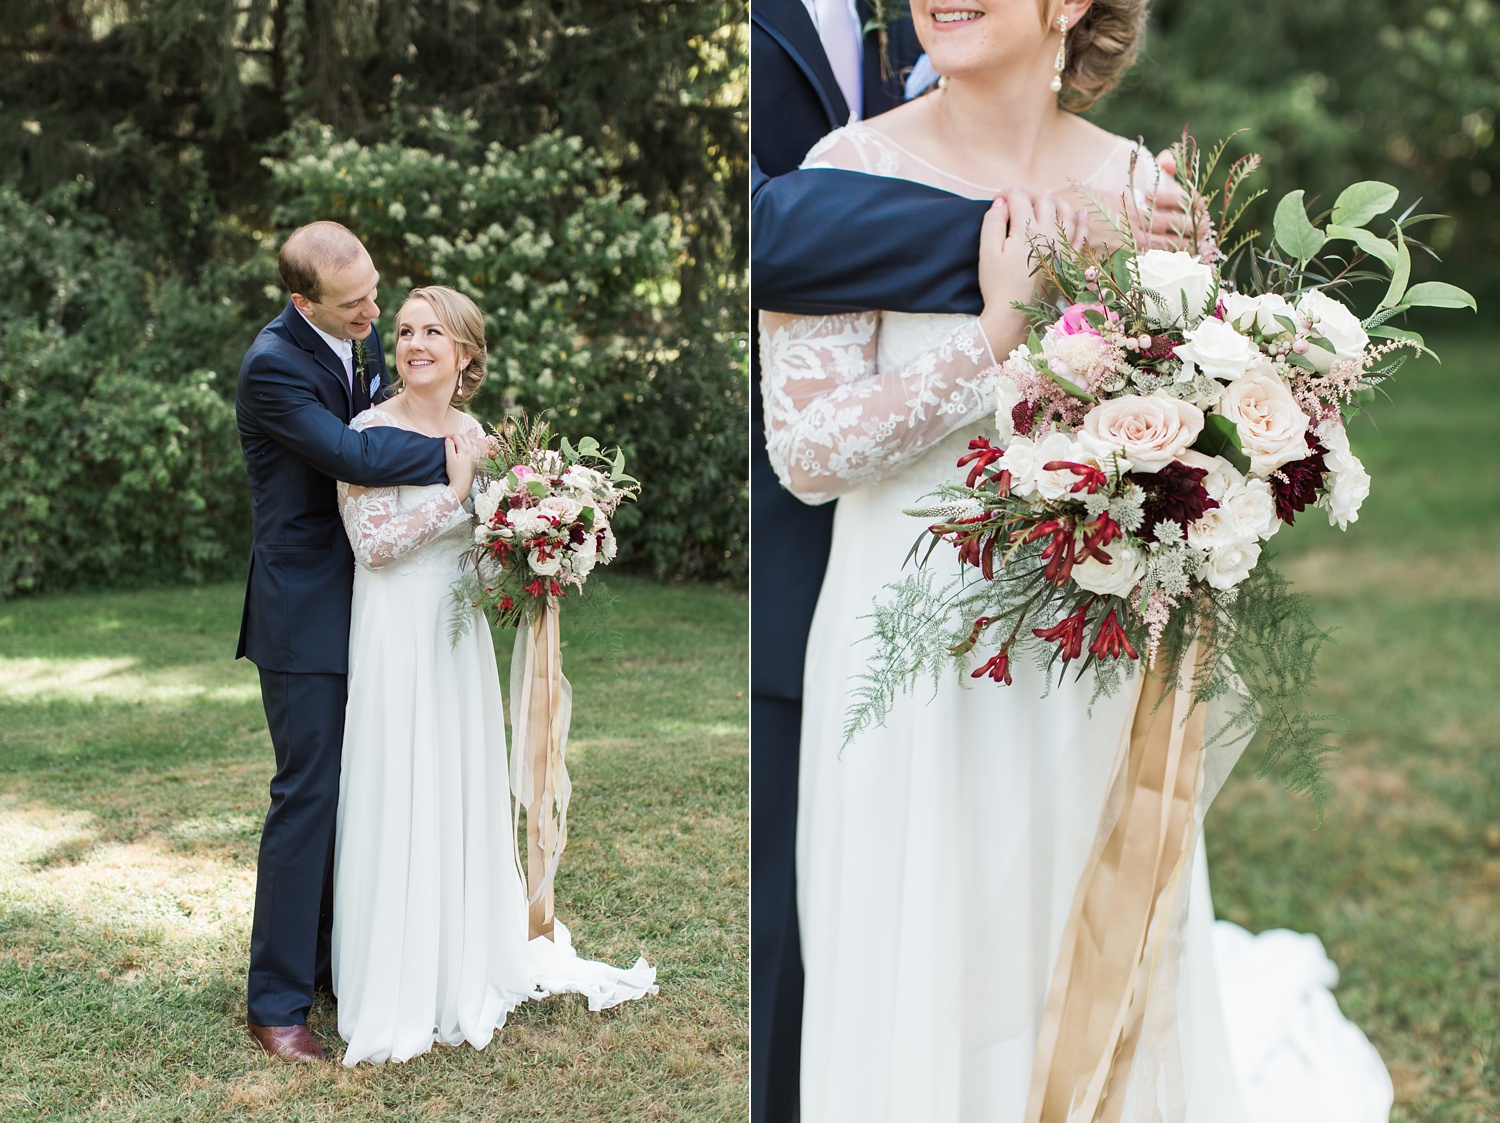 Pearl S. Buck House Wedding Photography | Philadelphia Wedding Photographer | Jillian and Nick